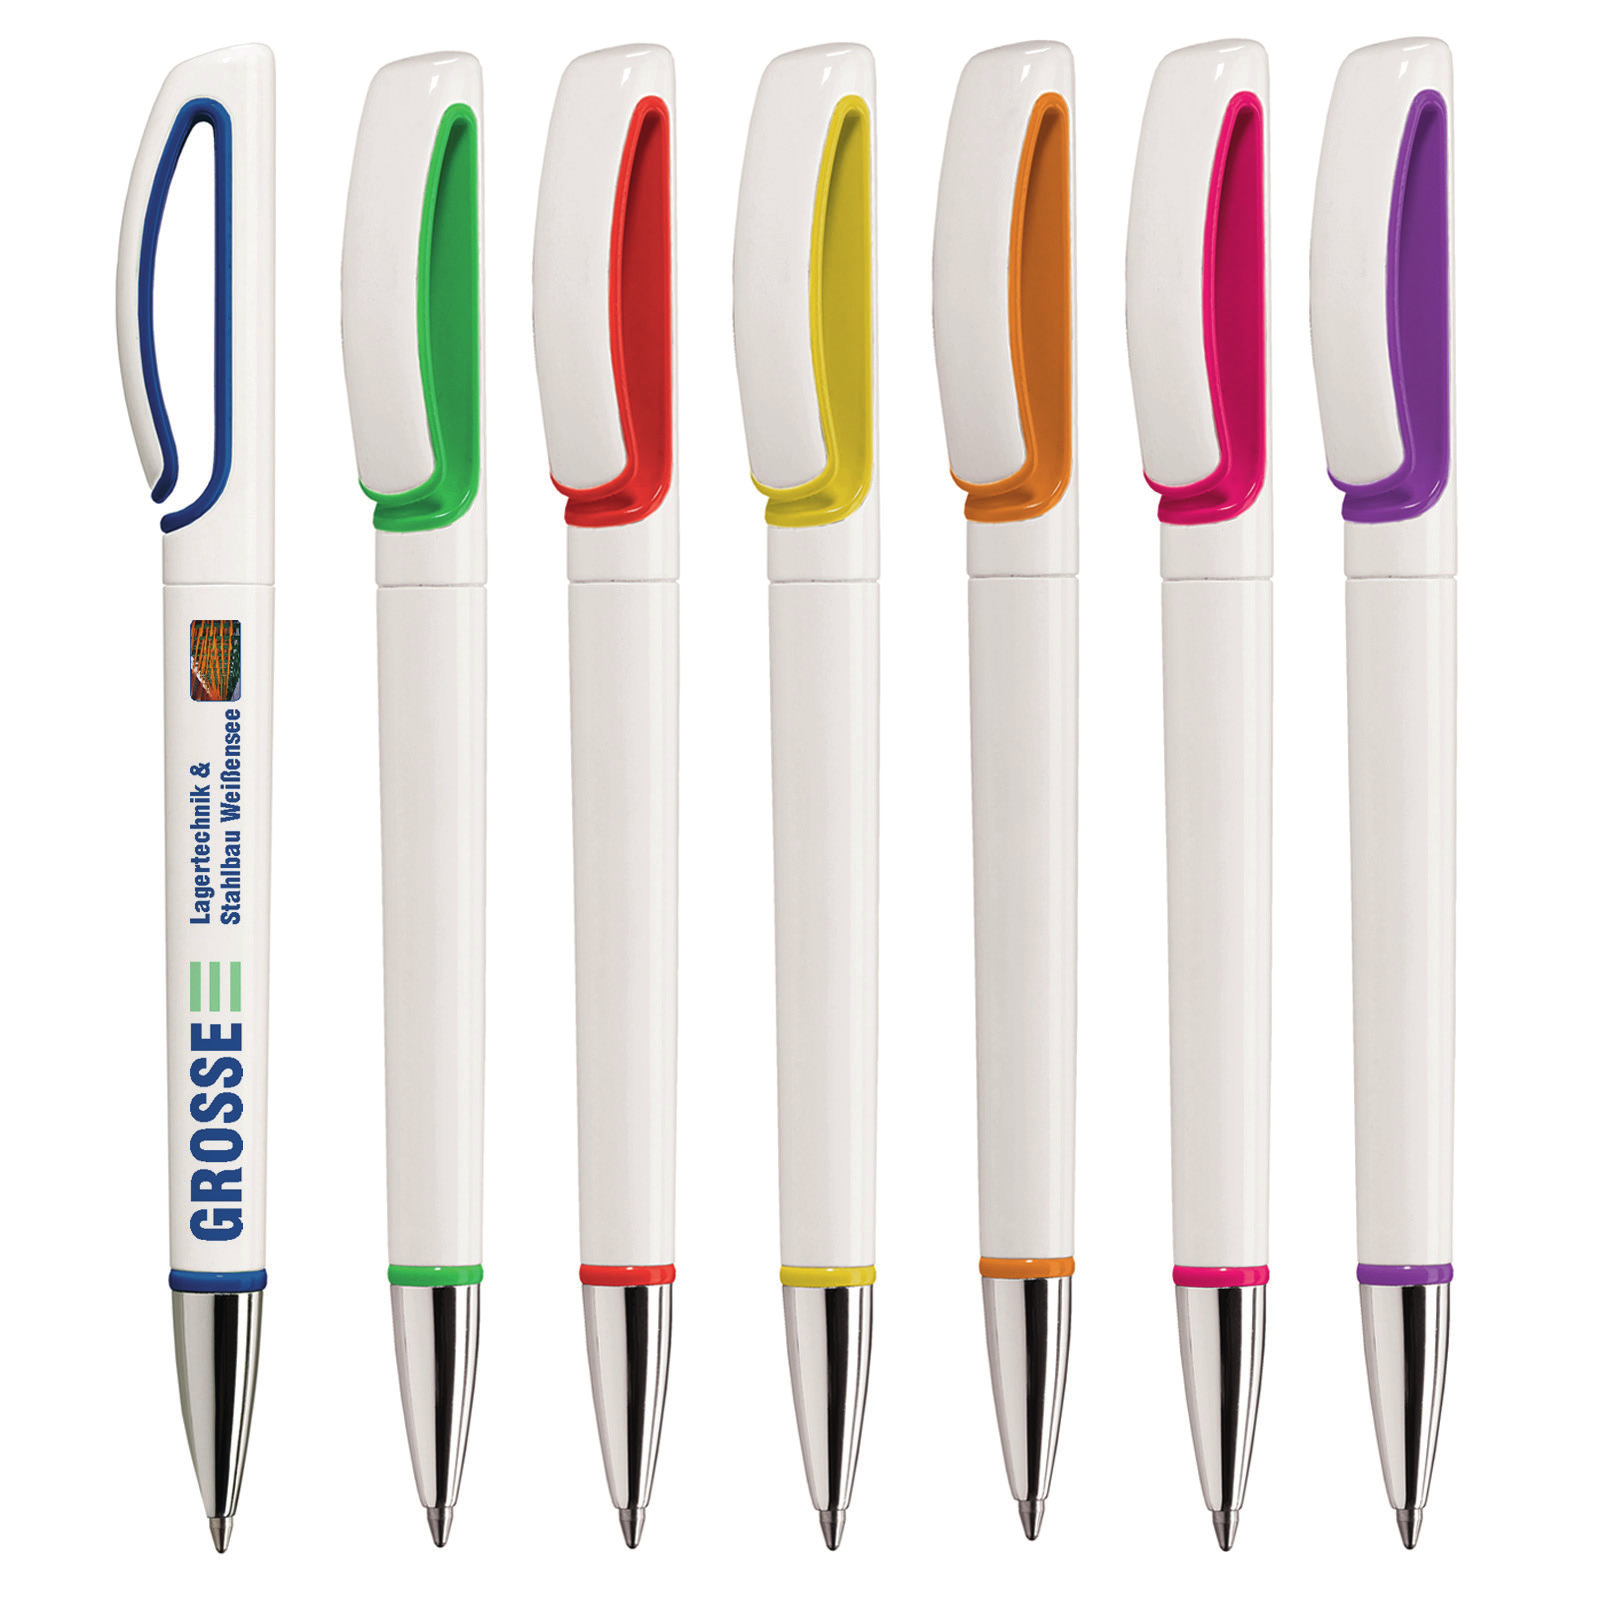 Der Kugelschreiber ist am sehr robusten Clip und an de Spitze farblich abgesetzt, die Spitze hat eine Chrome-Optik.